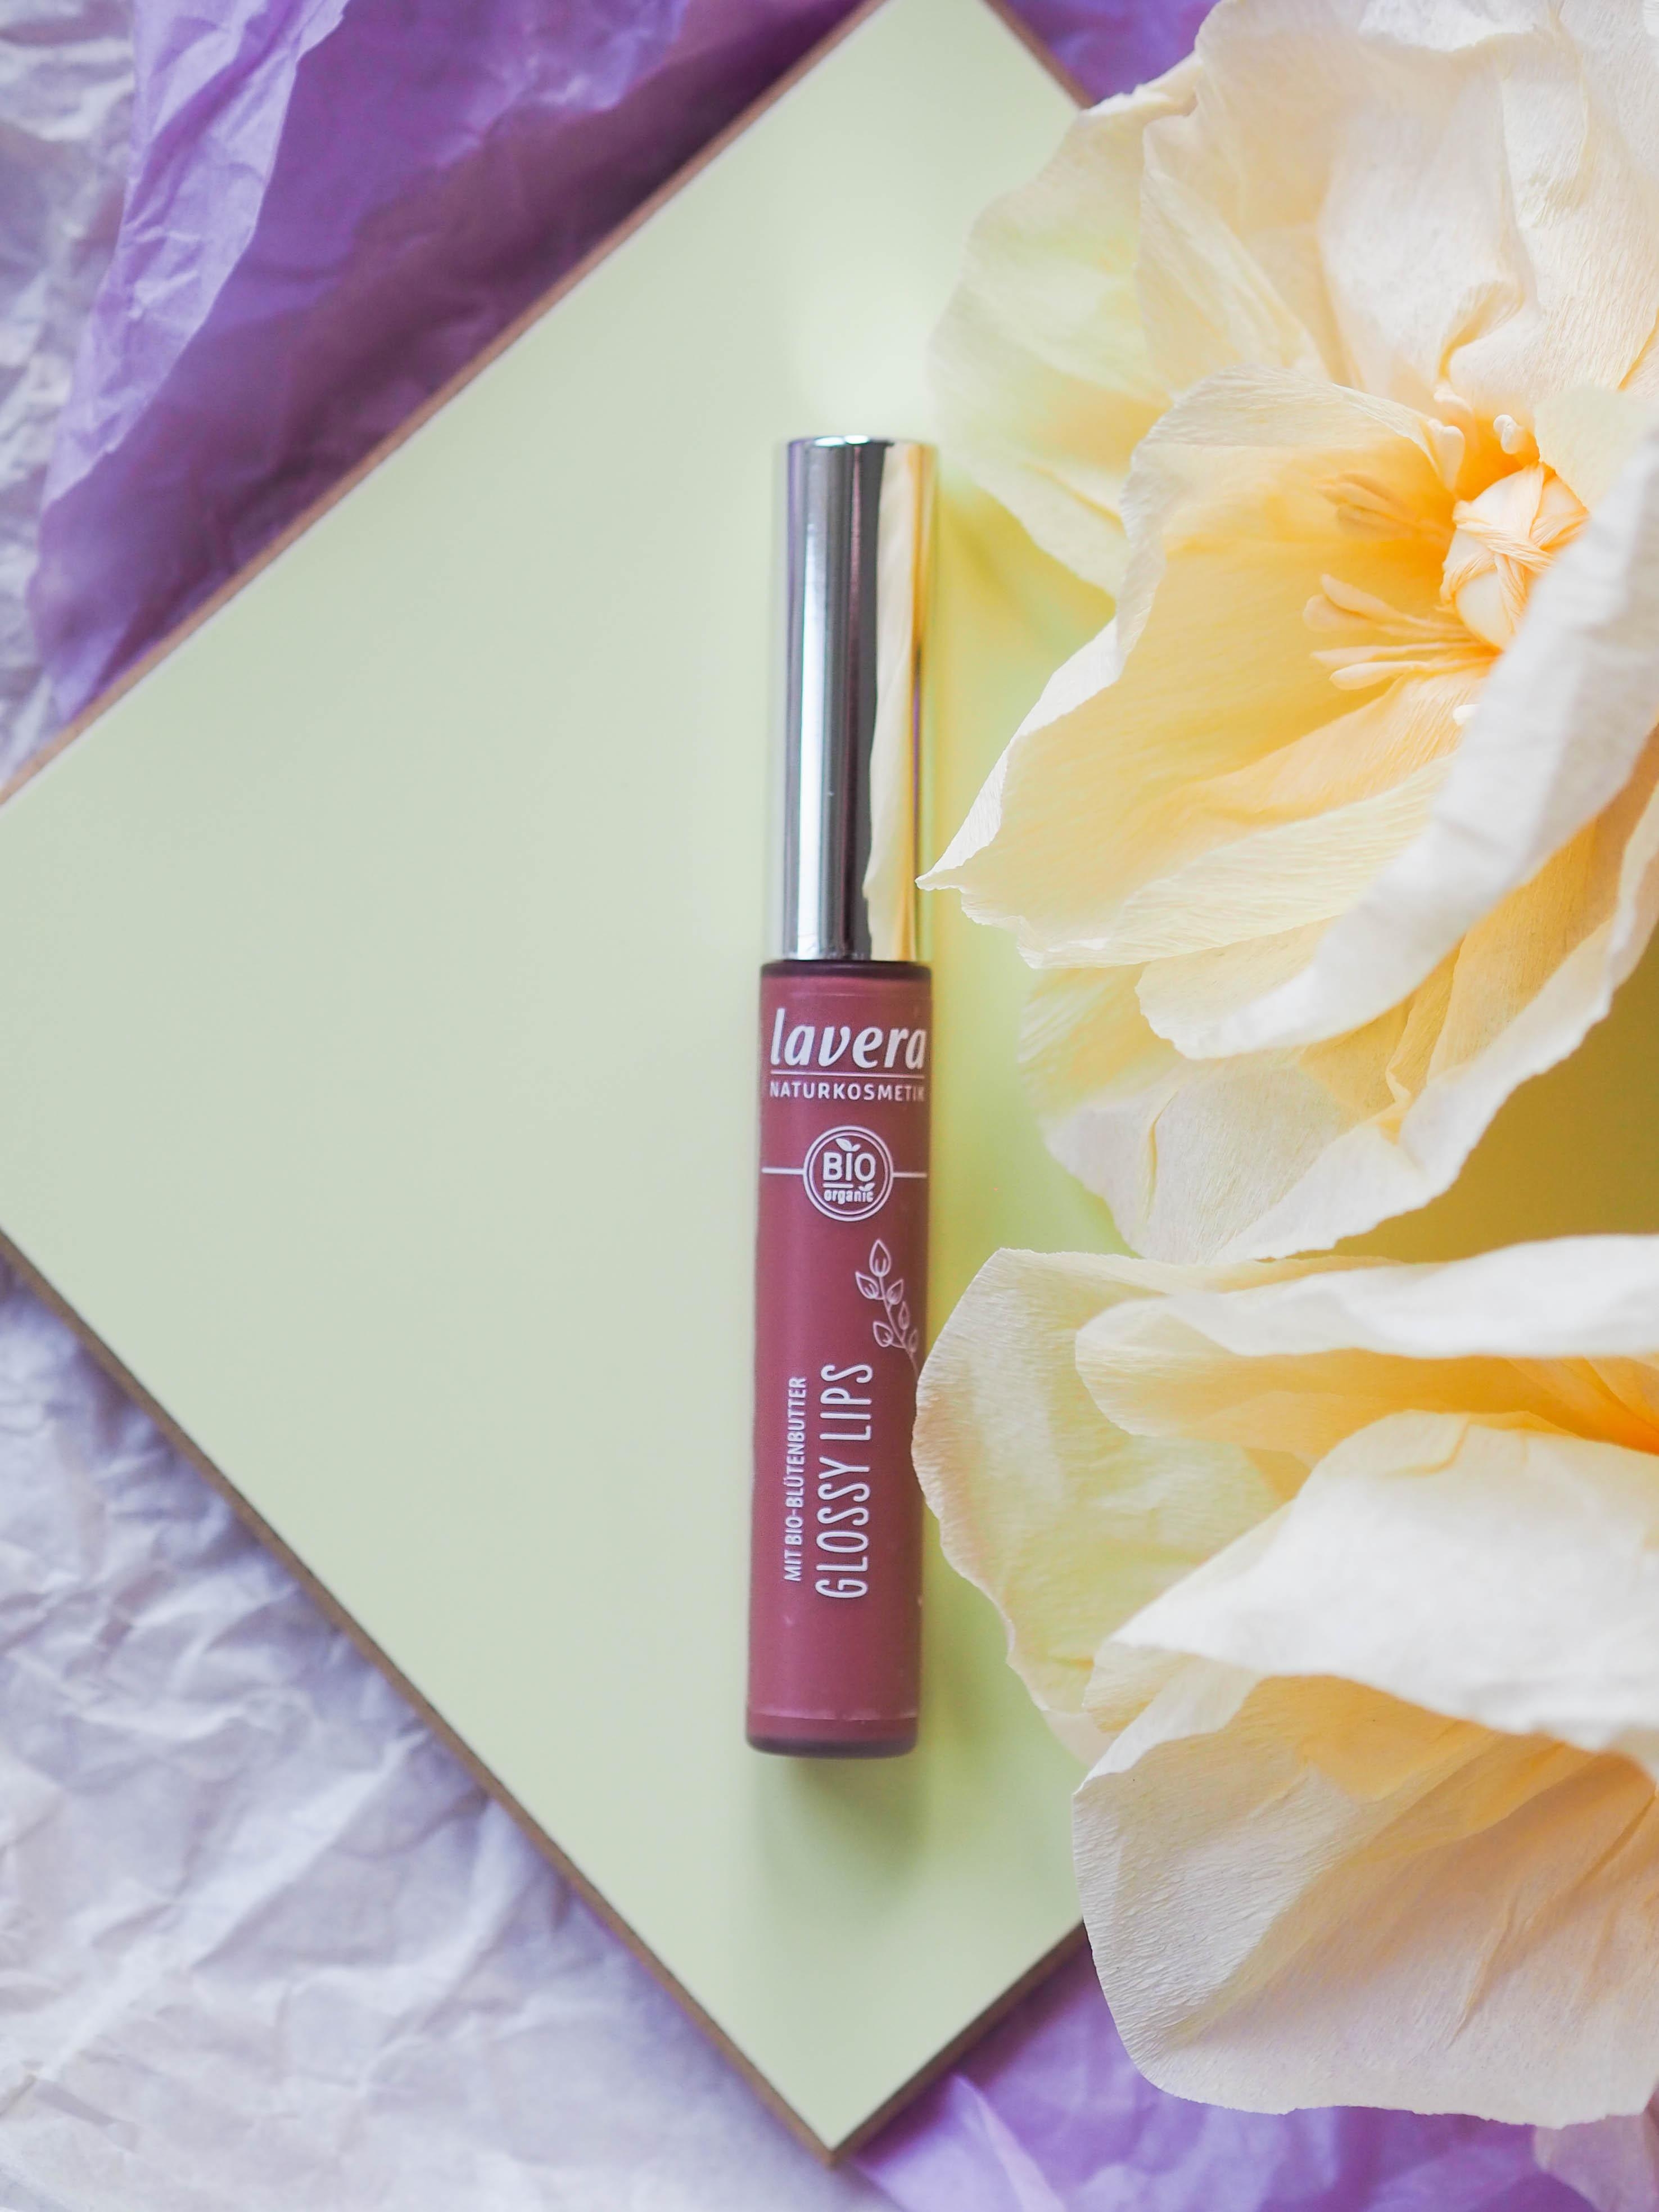 Für Sensibelchen: Der Glossy Lips Bio-Lipgloss von #Lavera mit wertvollem Bio-Jojobaöl 🤗 #Beautylieblinge 